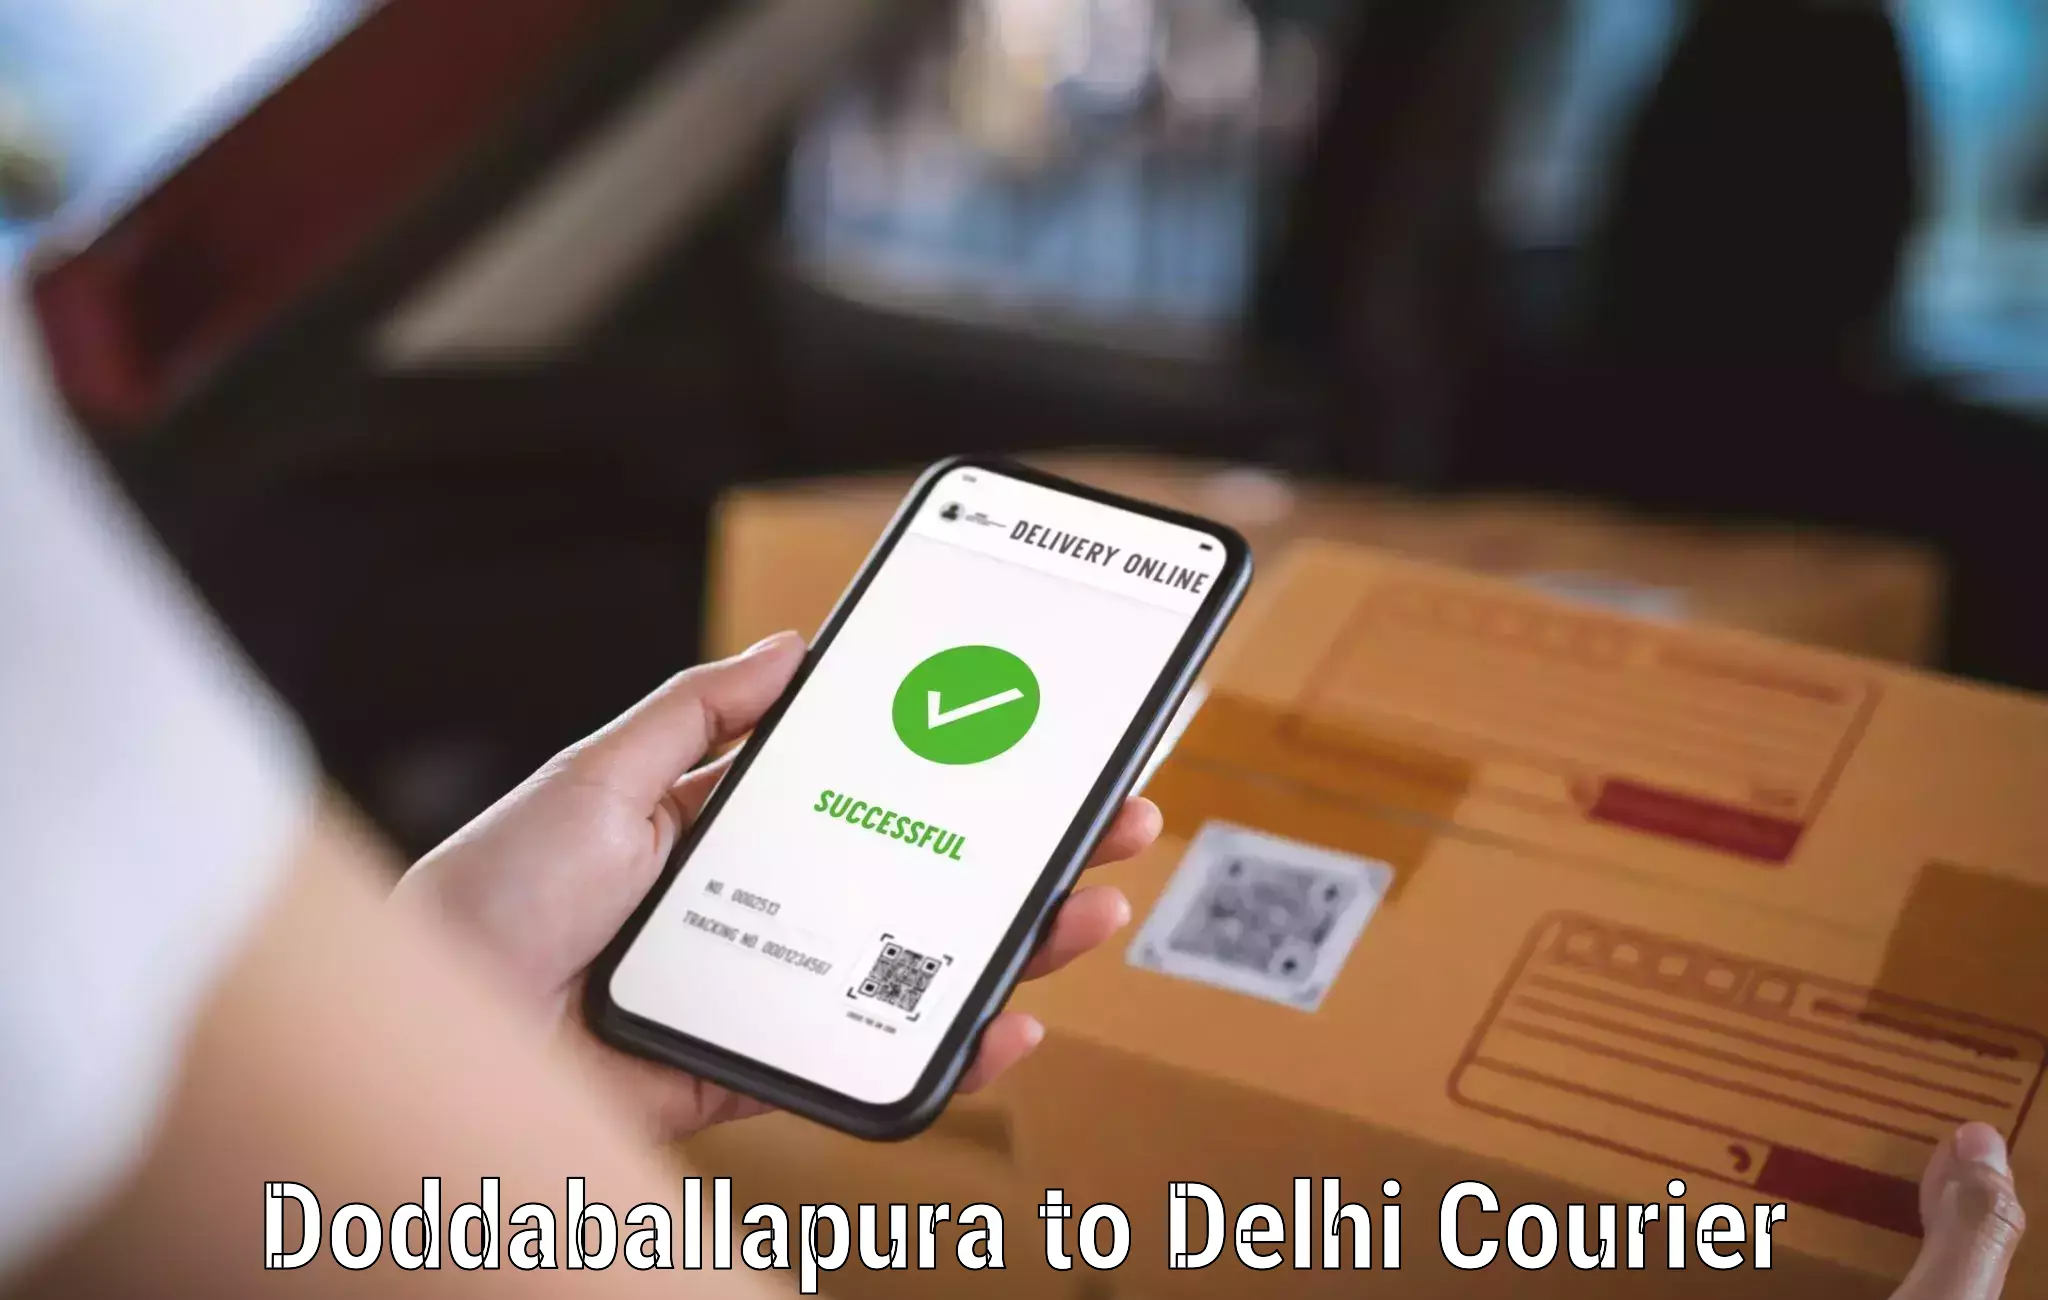 Easy access courier services Doddaballapura to Sarojini Nagar